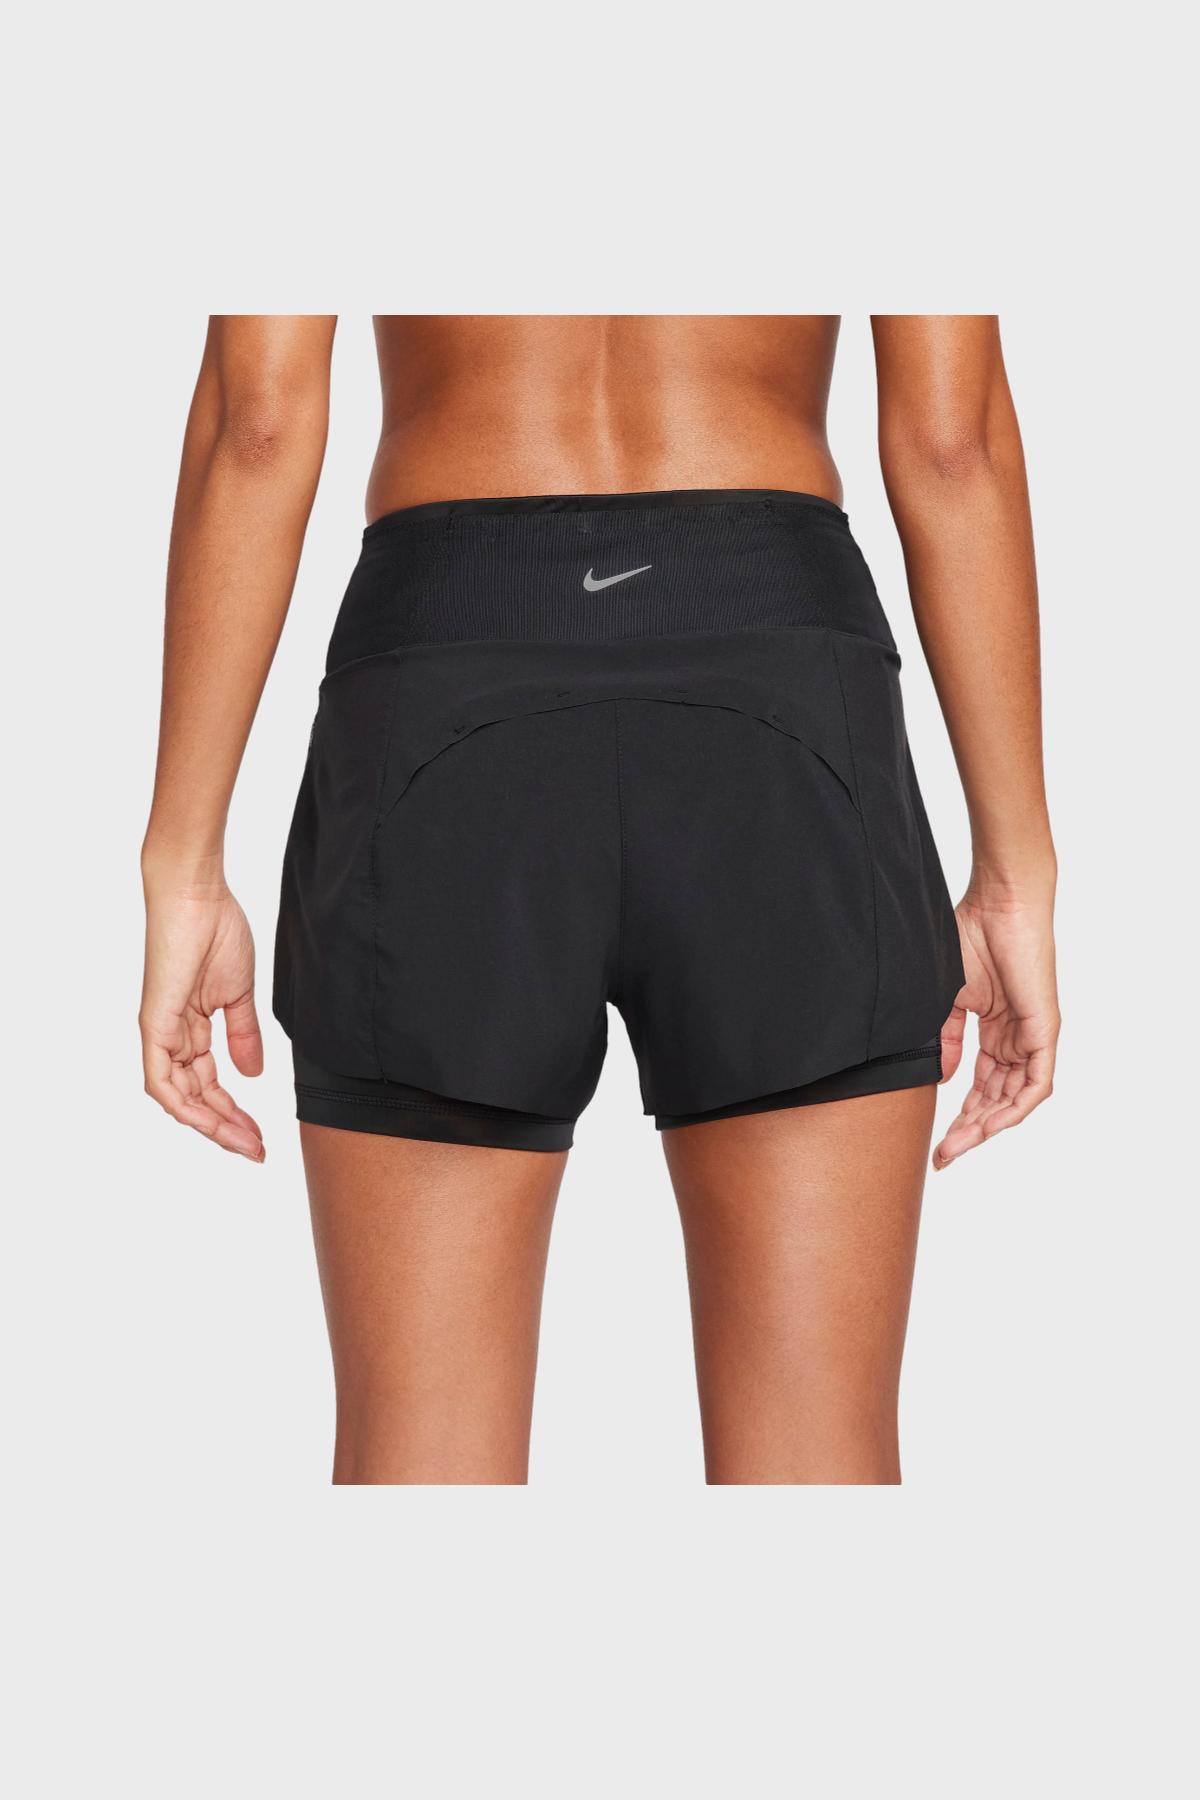 NIKE - W Nike DRI-FIT SWIFT Shorts 2 AND 1